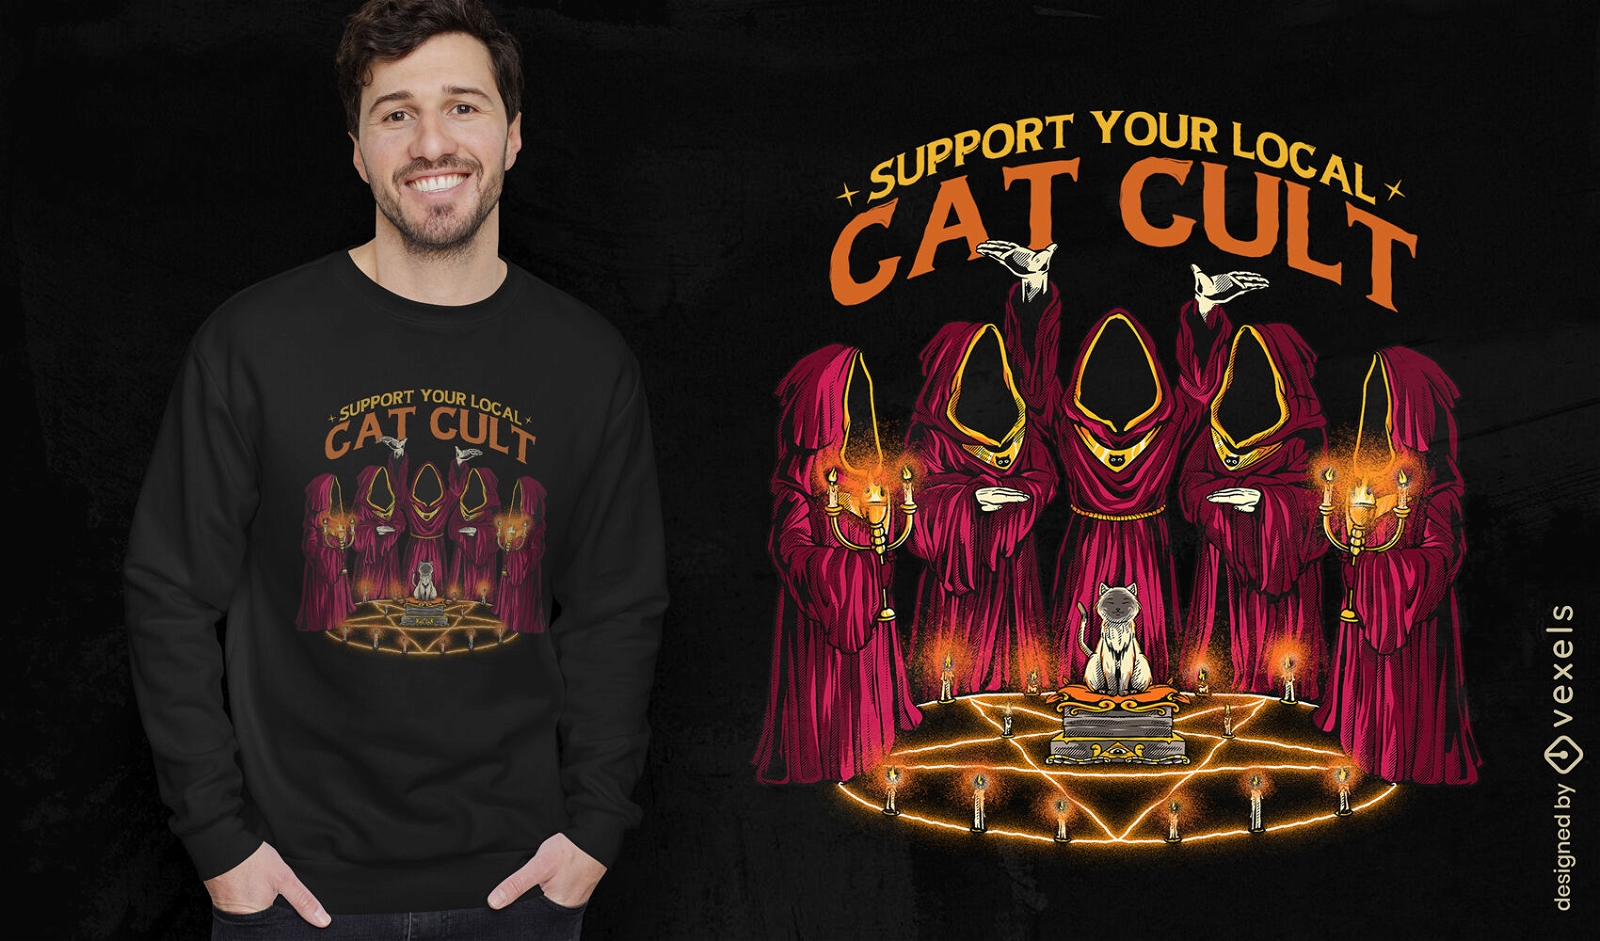 Dise?o de camiseta de culto al gato.